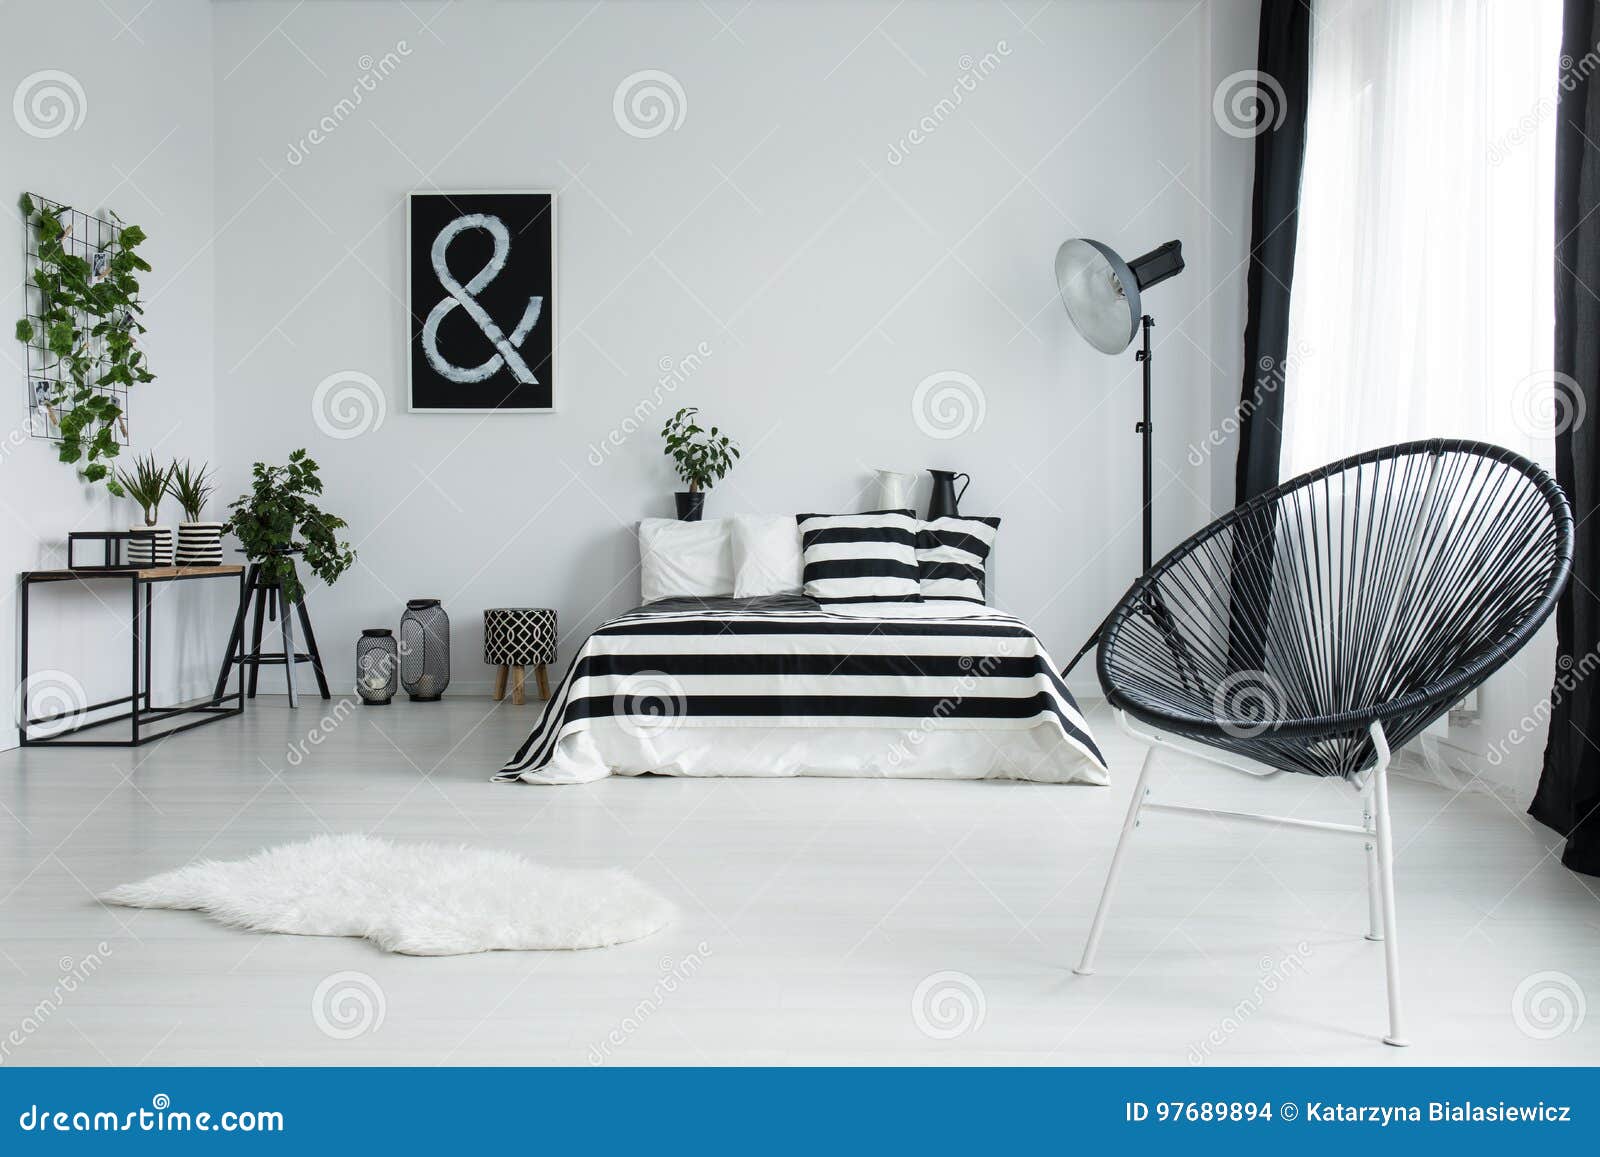 Chaise Noire Concue Dans La Chambre A Coucher Moderne Photo Stock Image Du Noire Chambre 97689894